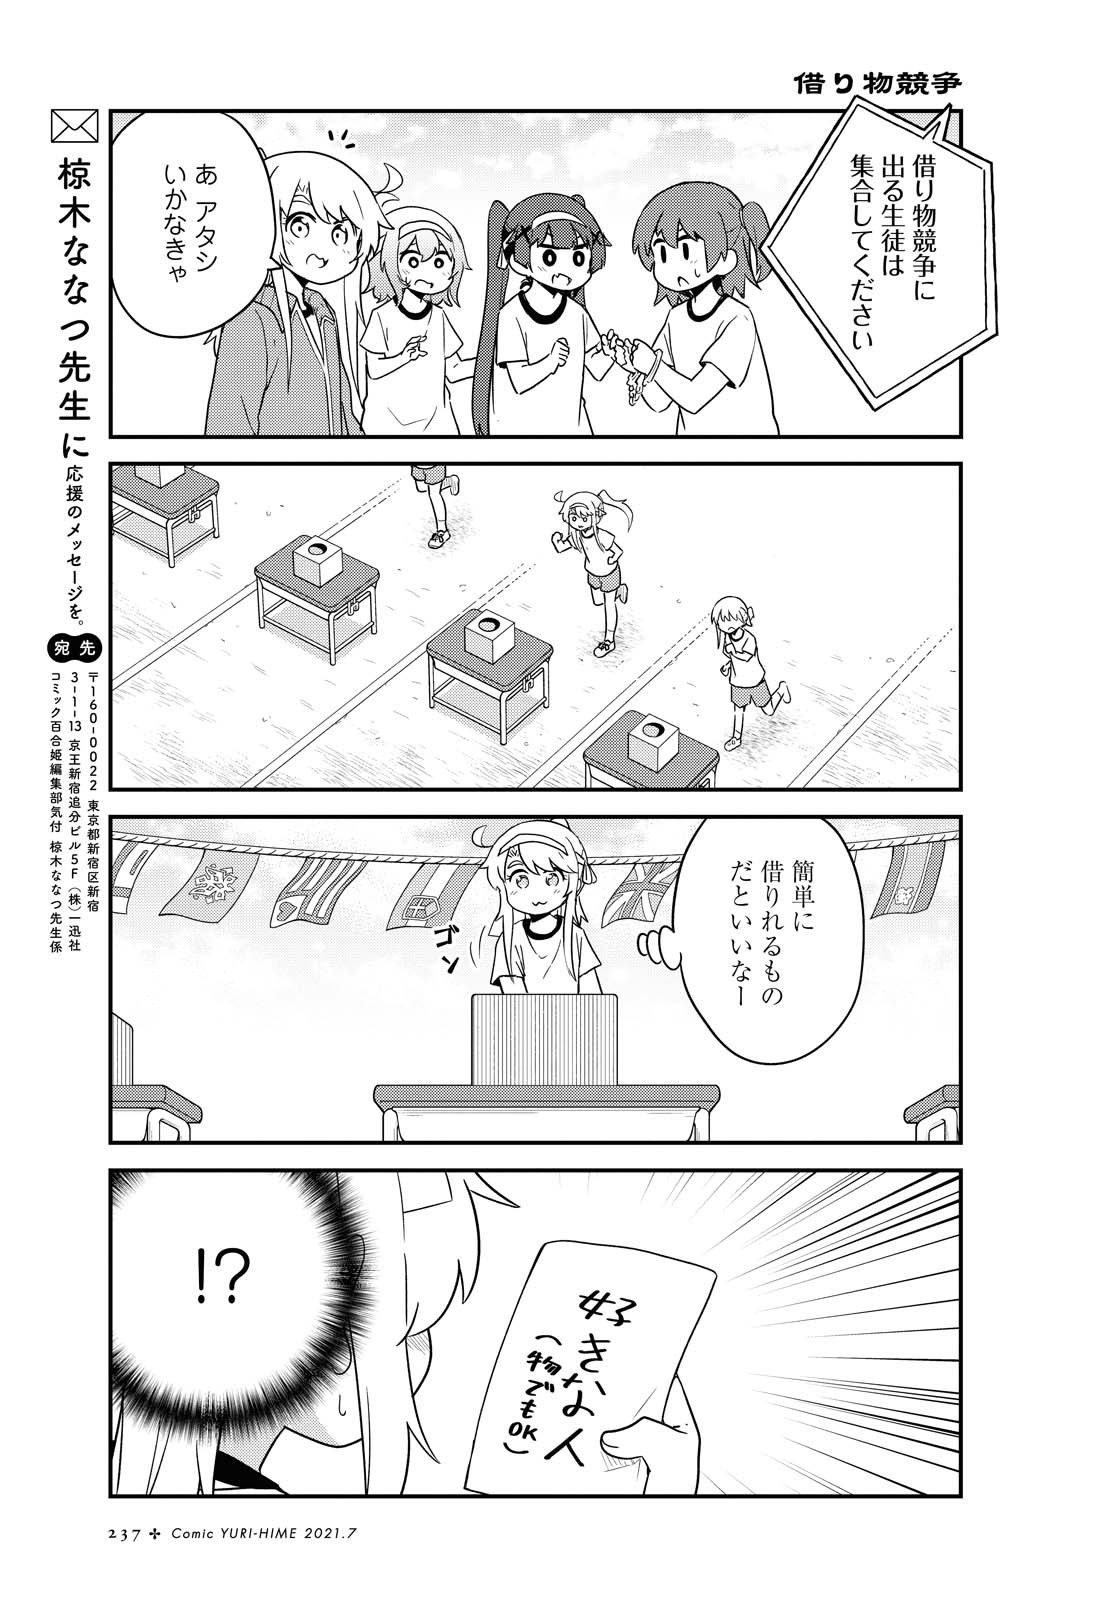 Watashi ni Tenshi ga Maiorita! - Chapter 83 - Page 13